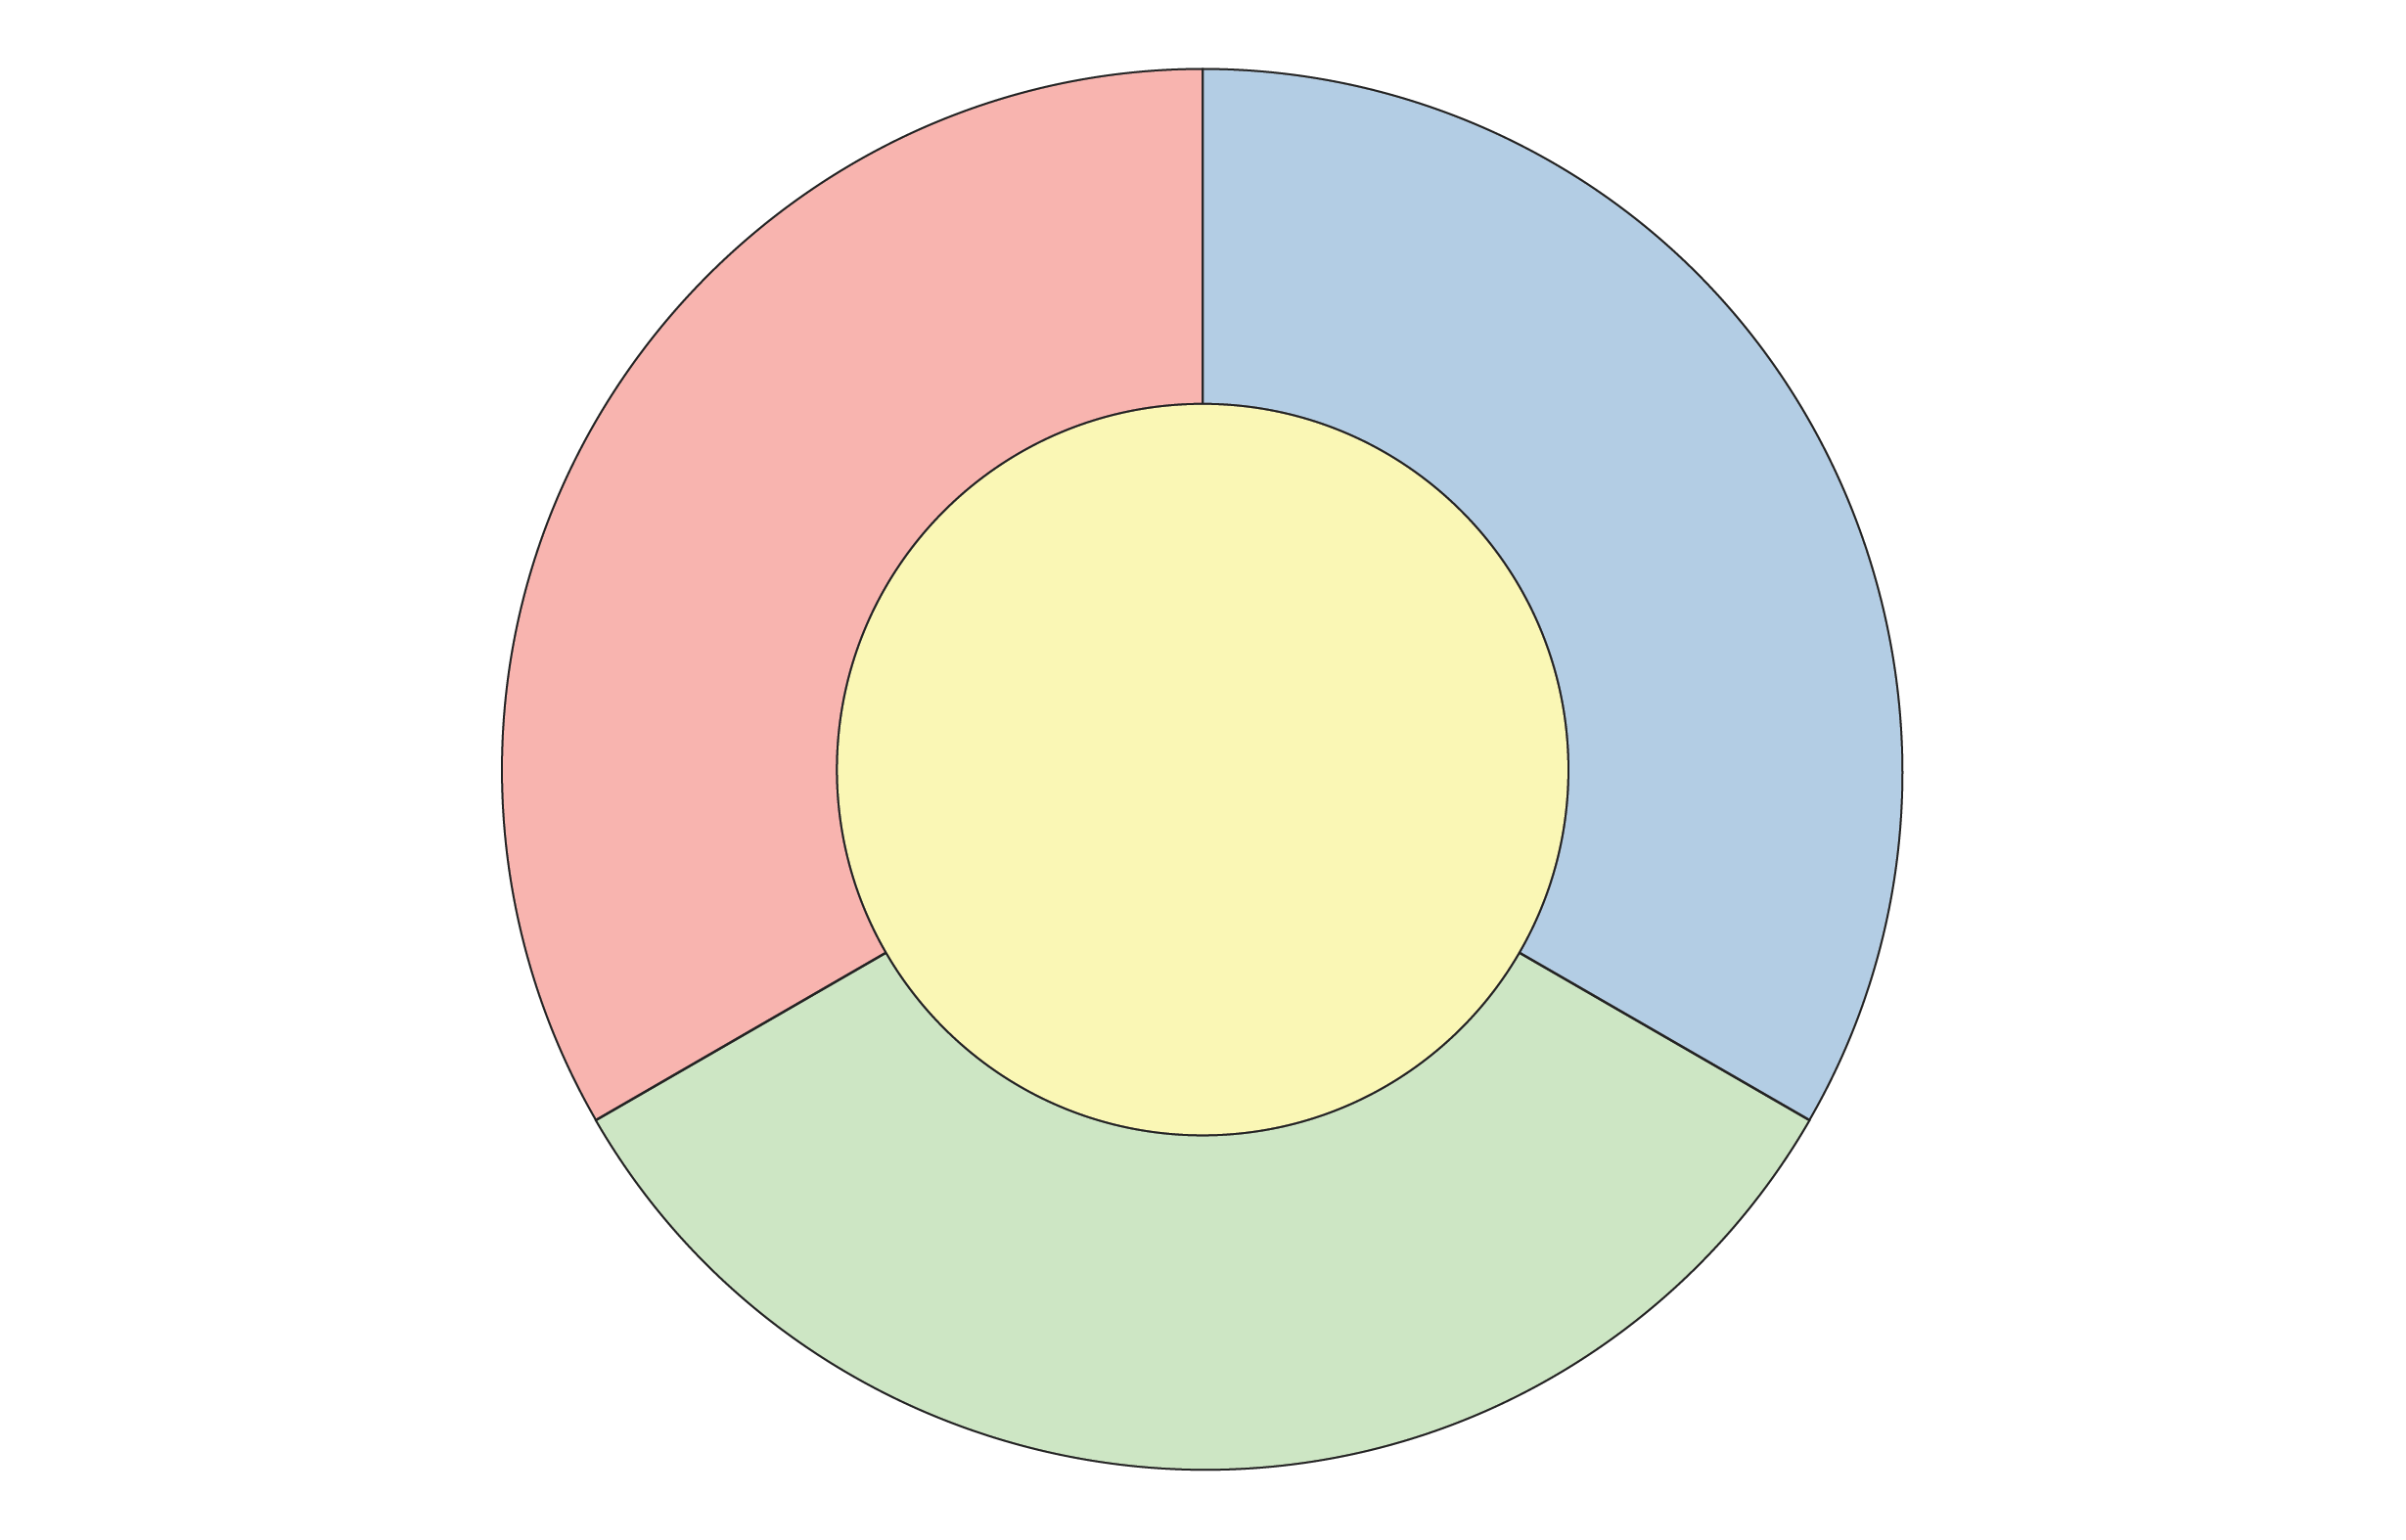 Üç bölüme ayrılmış bir halka ile sarılmış sarı bir dairenin diyagramı.  Yüzüğün her bölümü kırmızı, mavi veya yeşil renktedir.